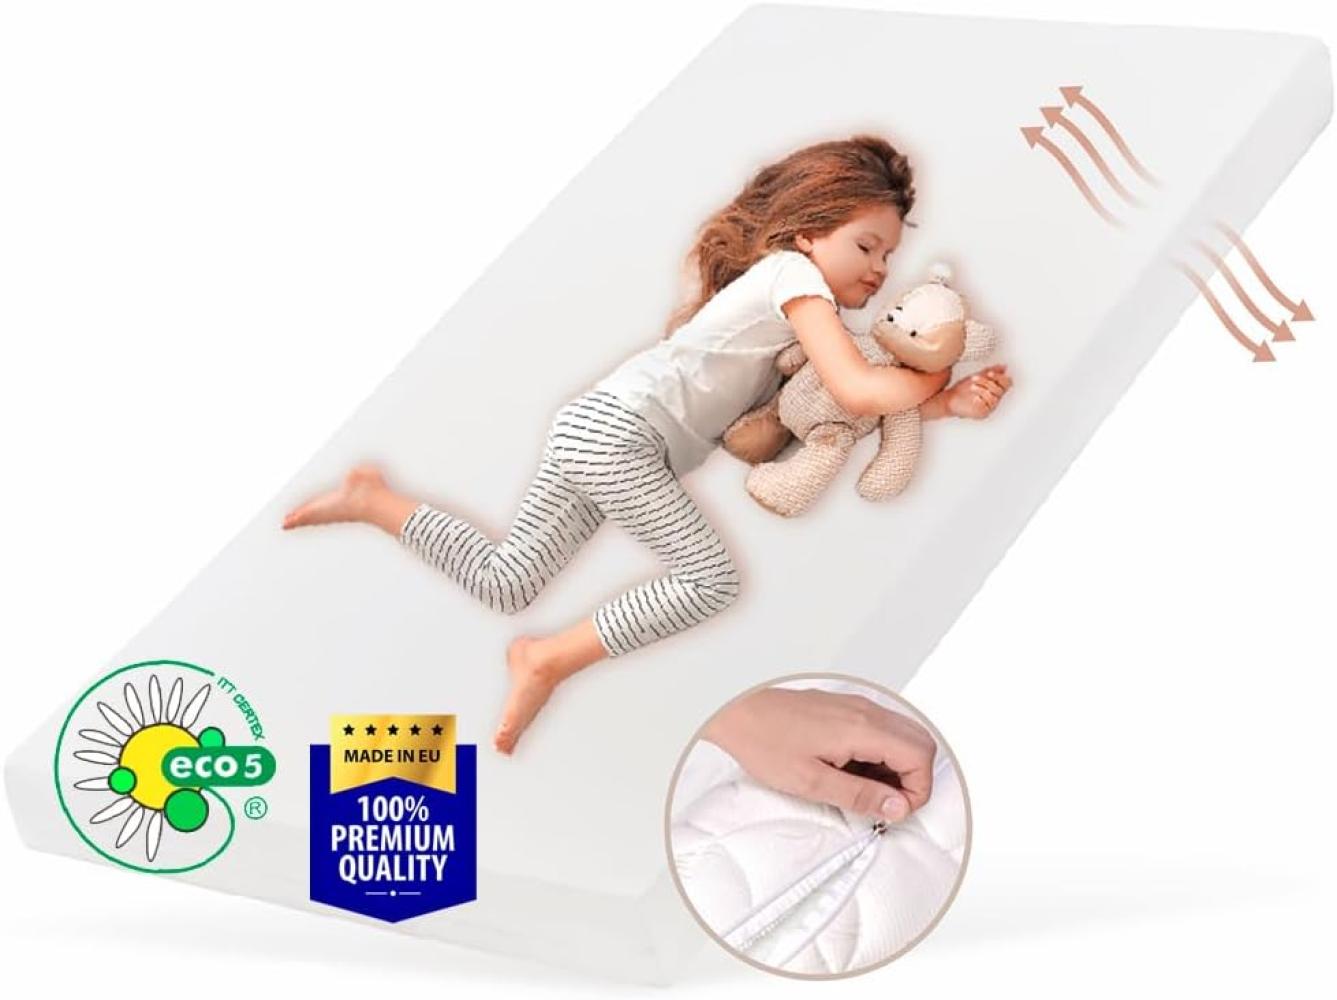 Kids Collective Kindermatratze SMART, Babymatratze 90x200 cm mit abnehmbarem Bezug, waschbar bei 60°C für Kinderbett, 200x90 cm, 8cm hoch, eco5 Zertifiziert Bild 1